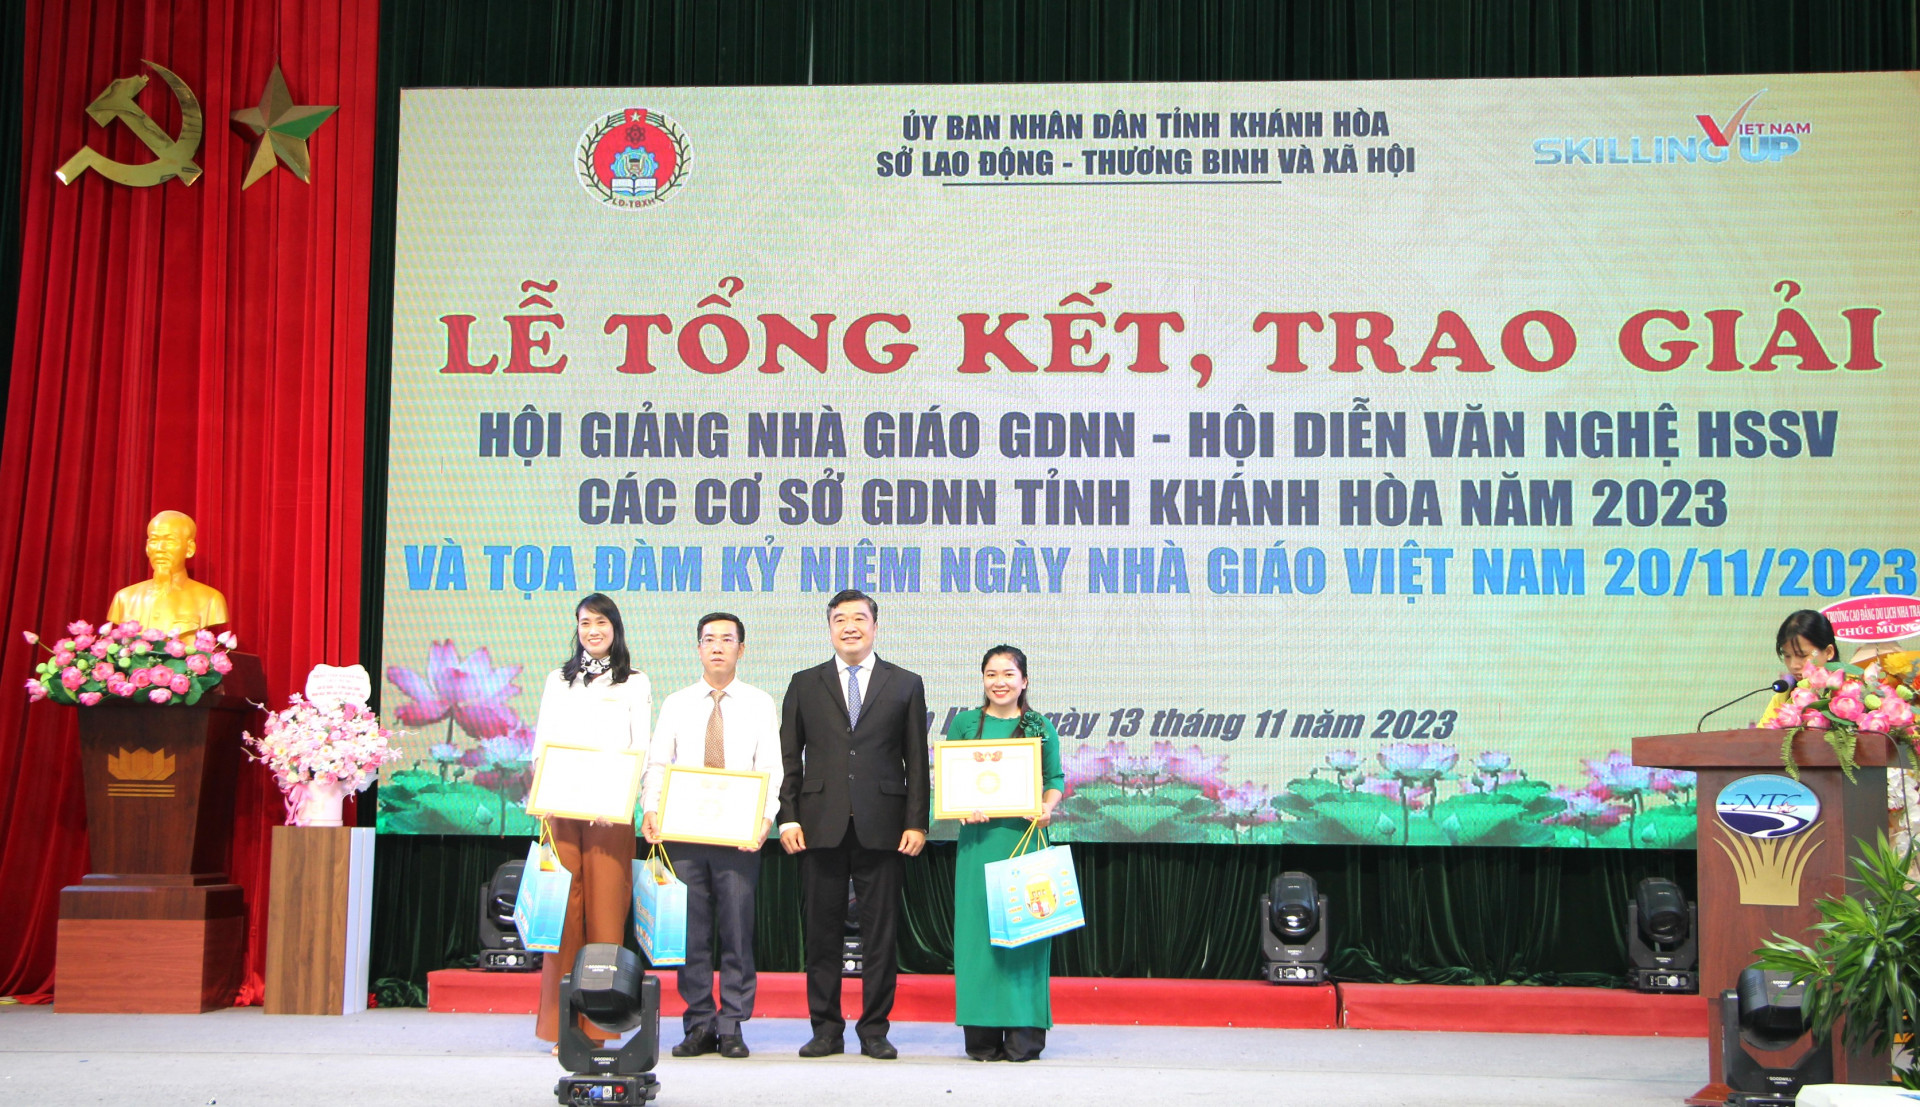 Ông Tạ Hồng Quang trao giấy khen cho những nhà giáo giáo dục nghề nghiệp đạt giải Nhất tại Hội giảng nhà giáo giáo dục nghề nghiệp tỉnh.